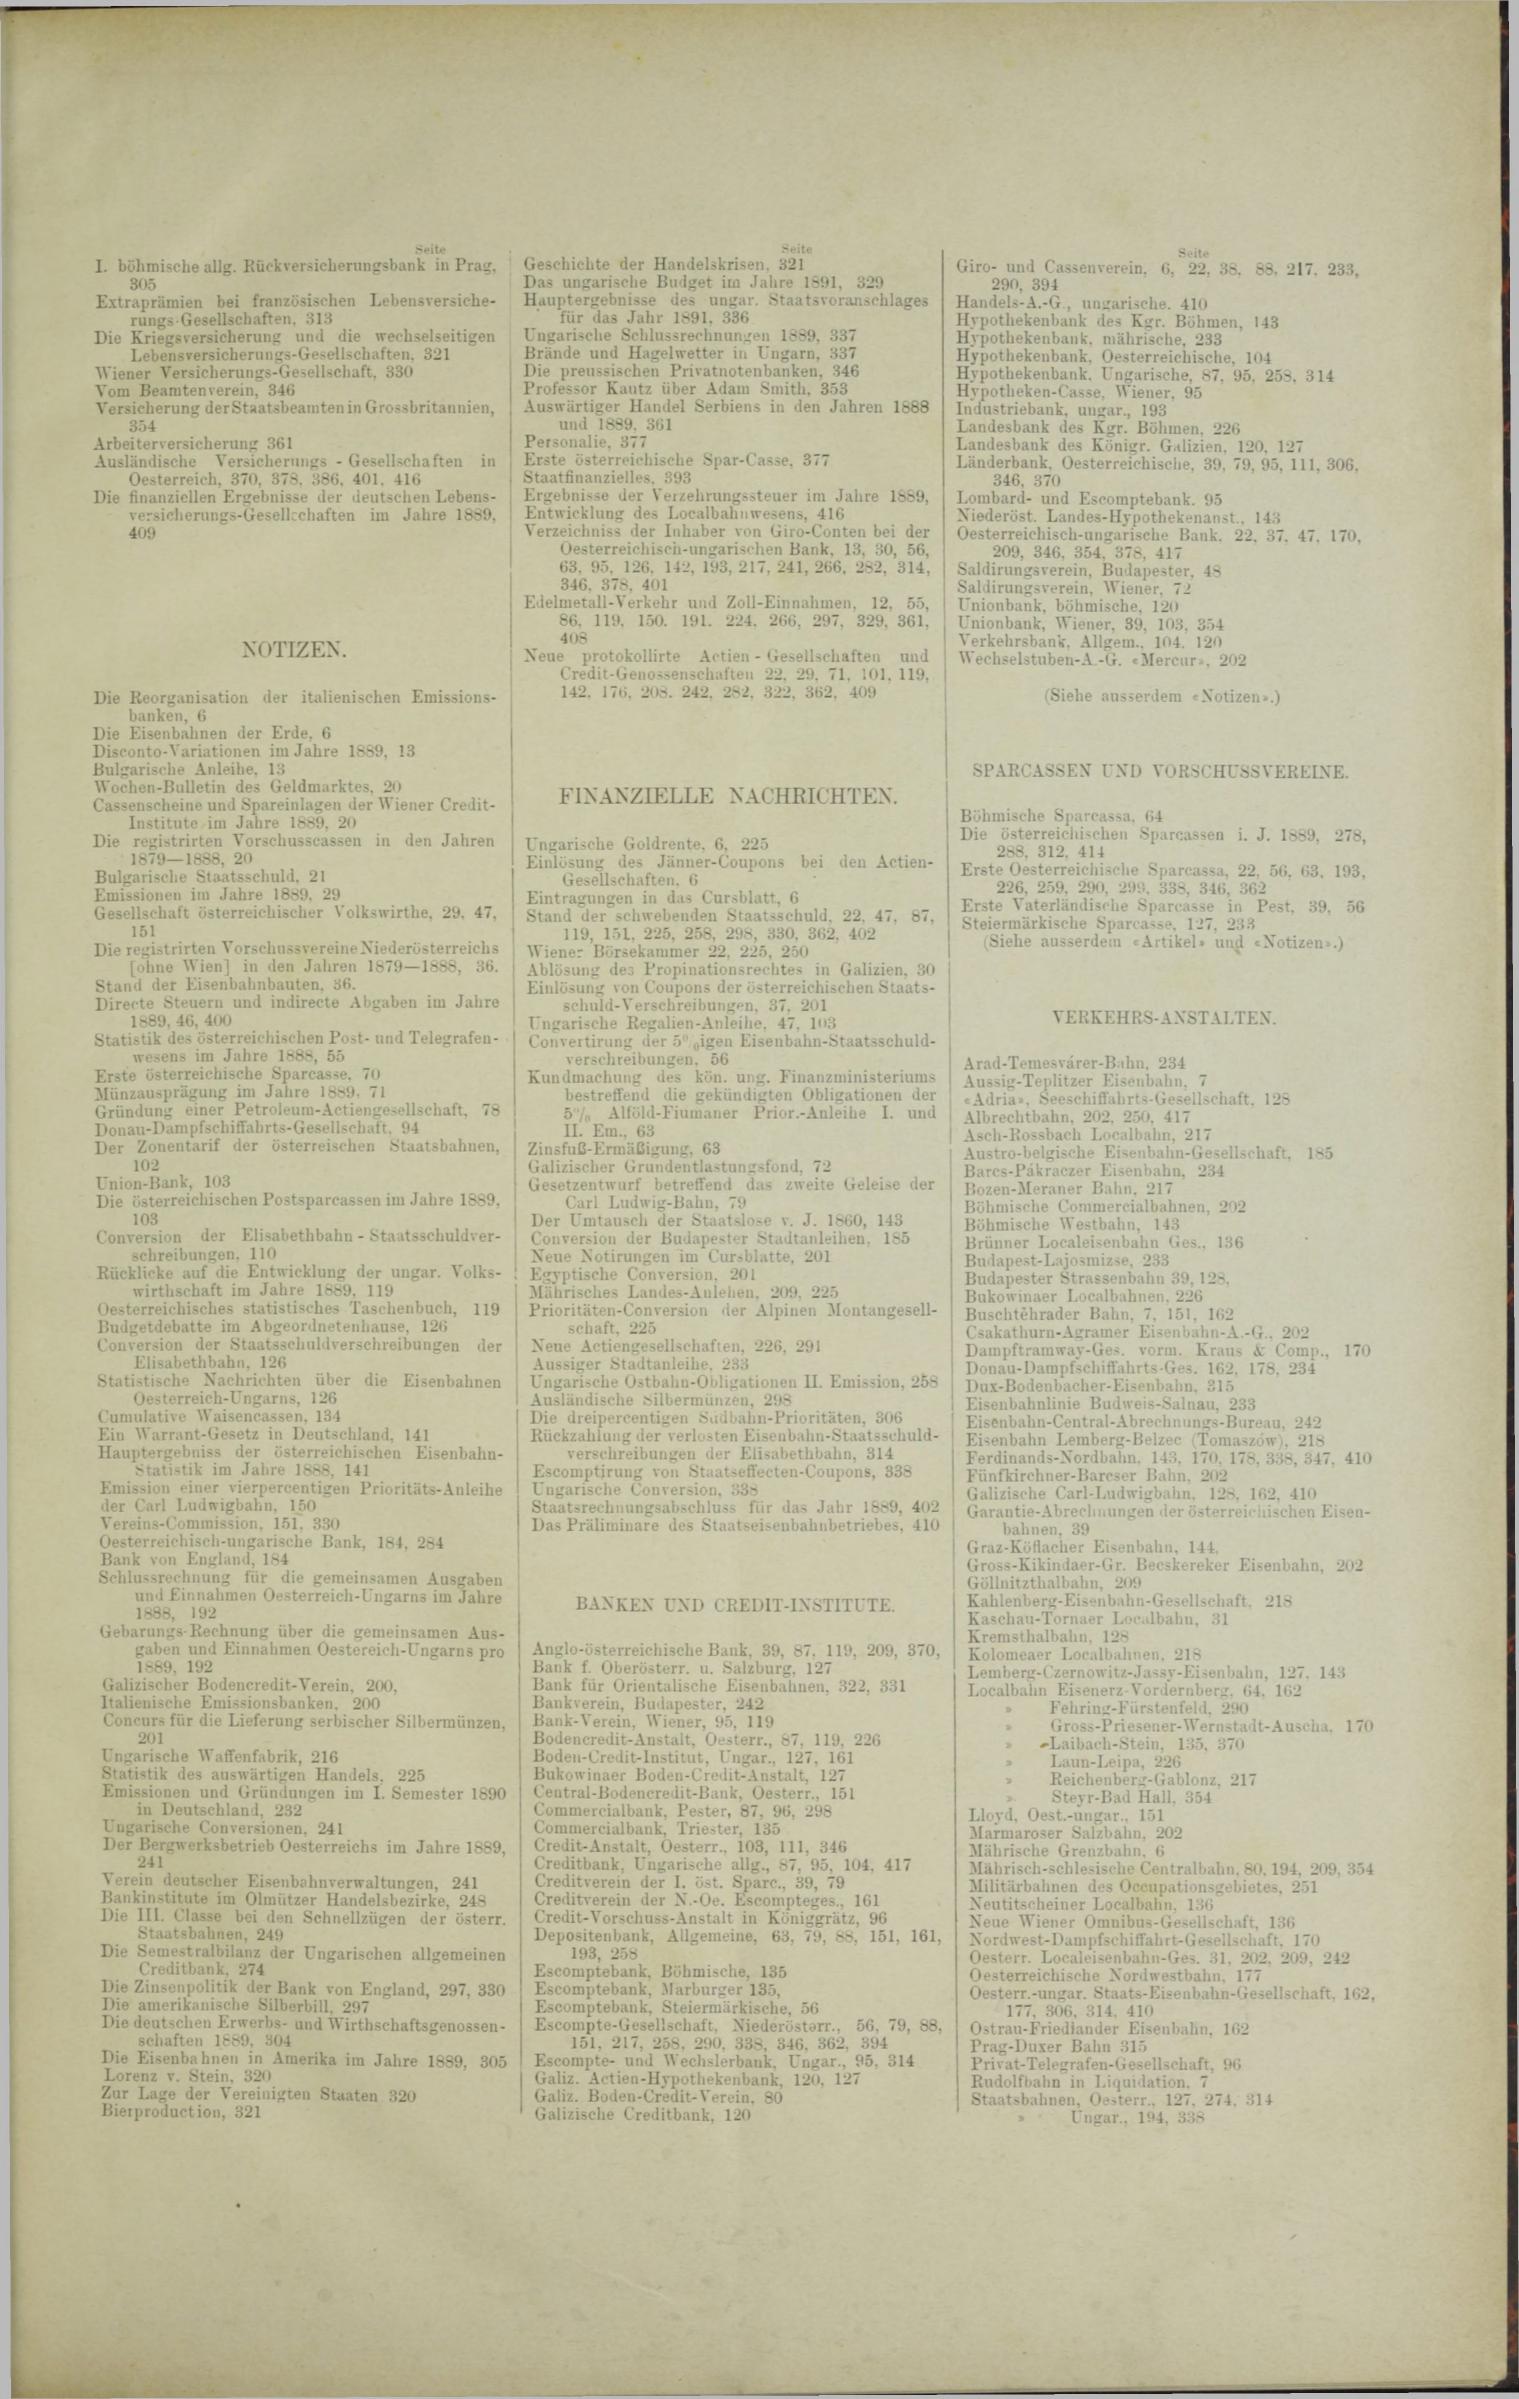 Der Tresor 27.02.1890 - Seite 11